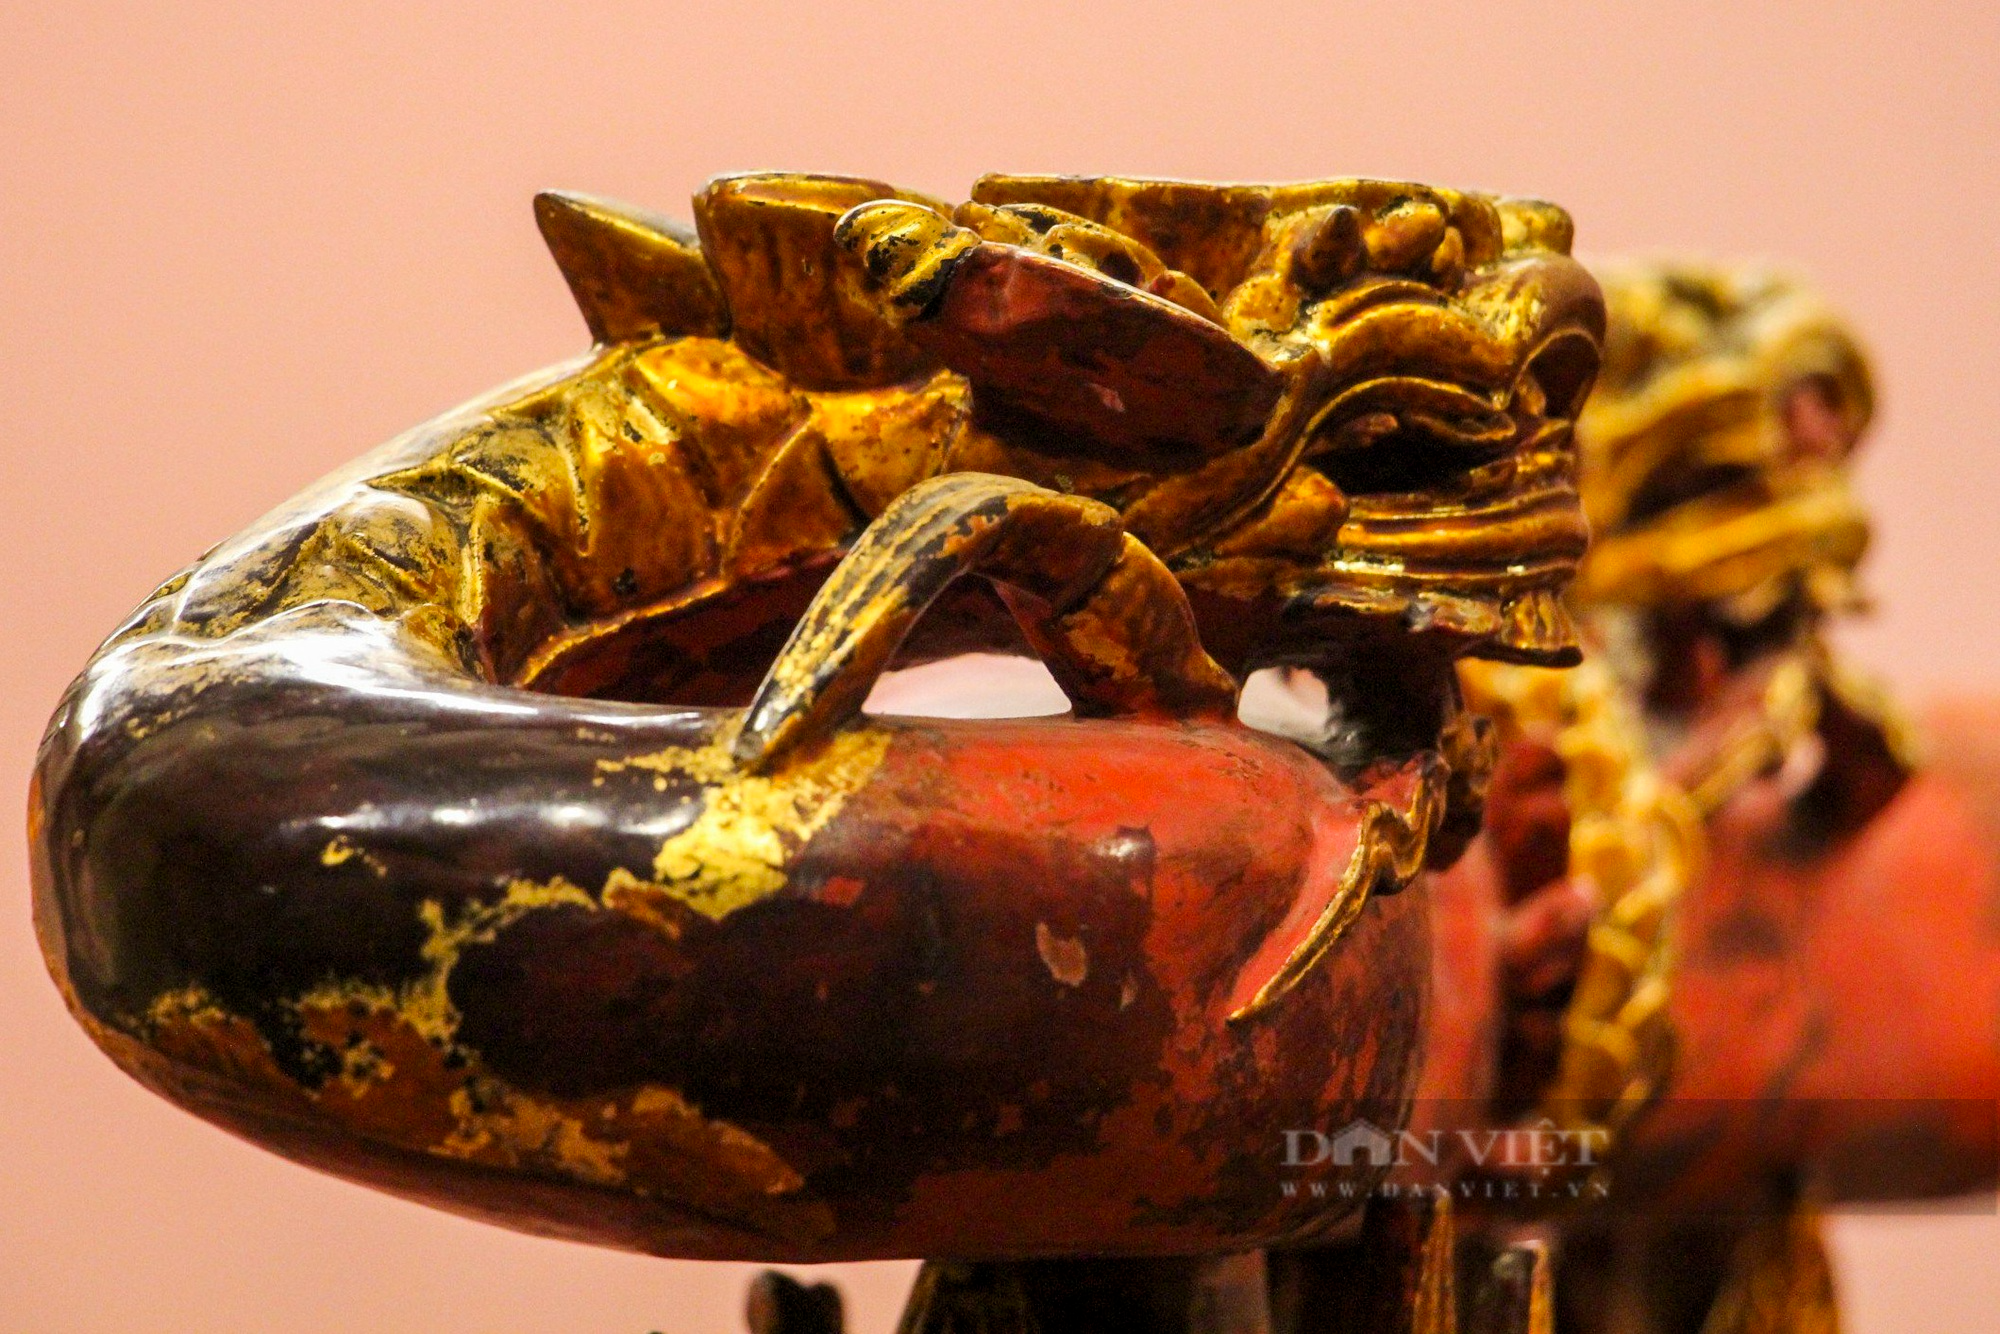 Ngai thờ sơn son thếp vàng 300 tuổi ở Thái Bình được công nhận là bảo vật quốc gia - Ảnh 6.